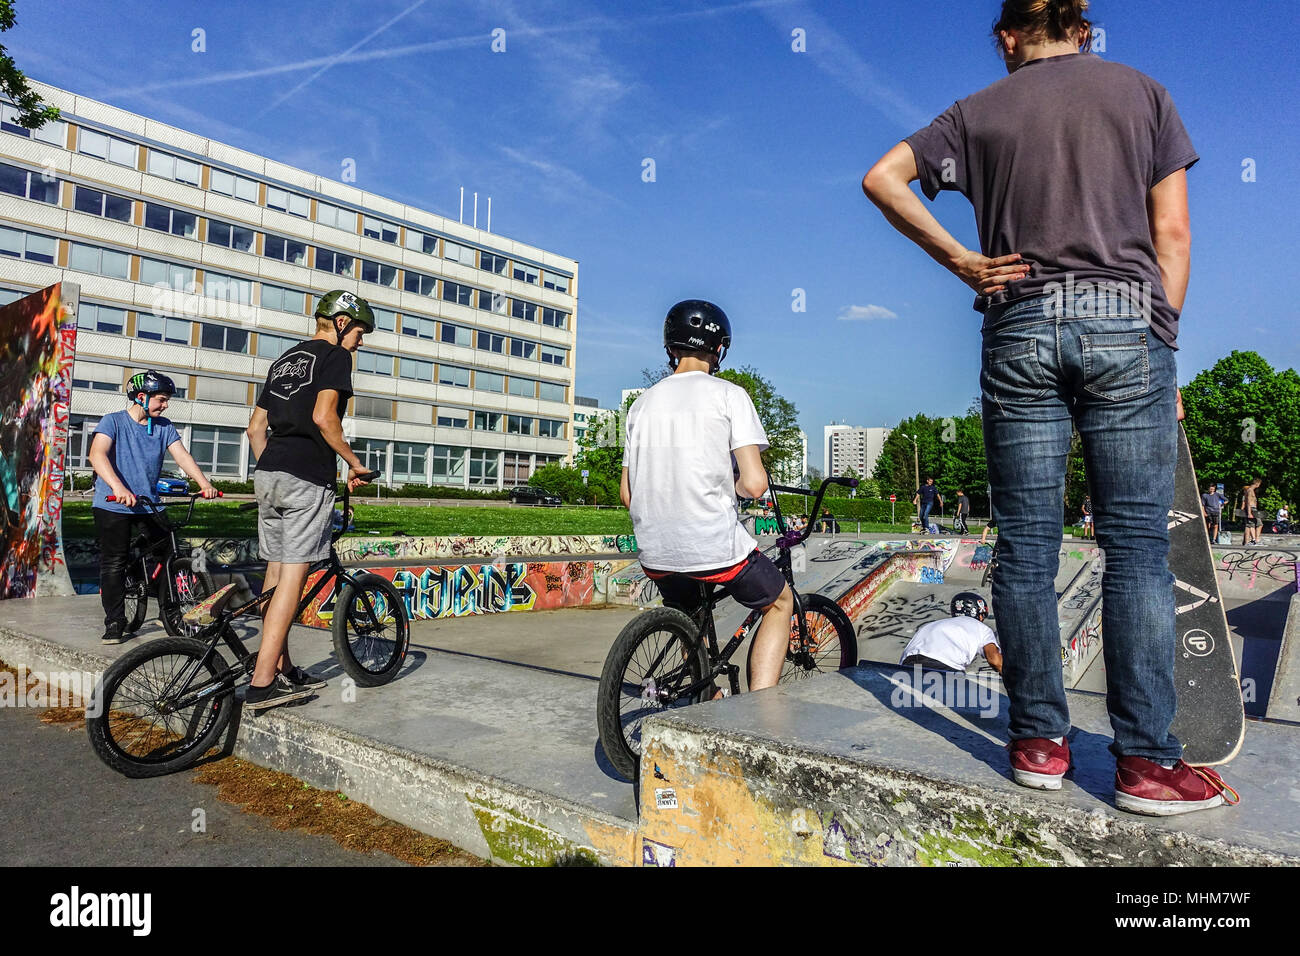 Les adolescents des vélos à un milieu urbain vtt et Skate parc Lingnerallee, Dresde, Saxe, Allemagne Banque D'Images